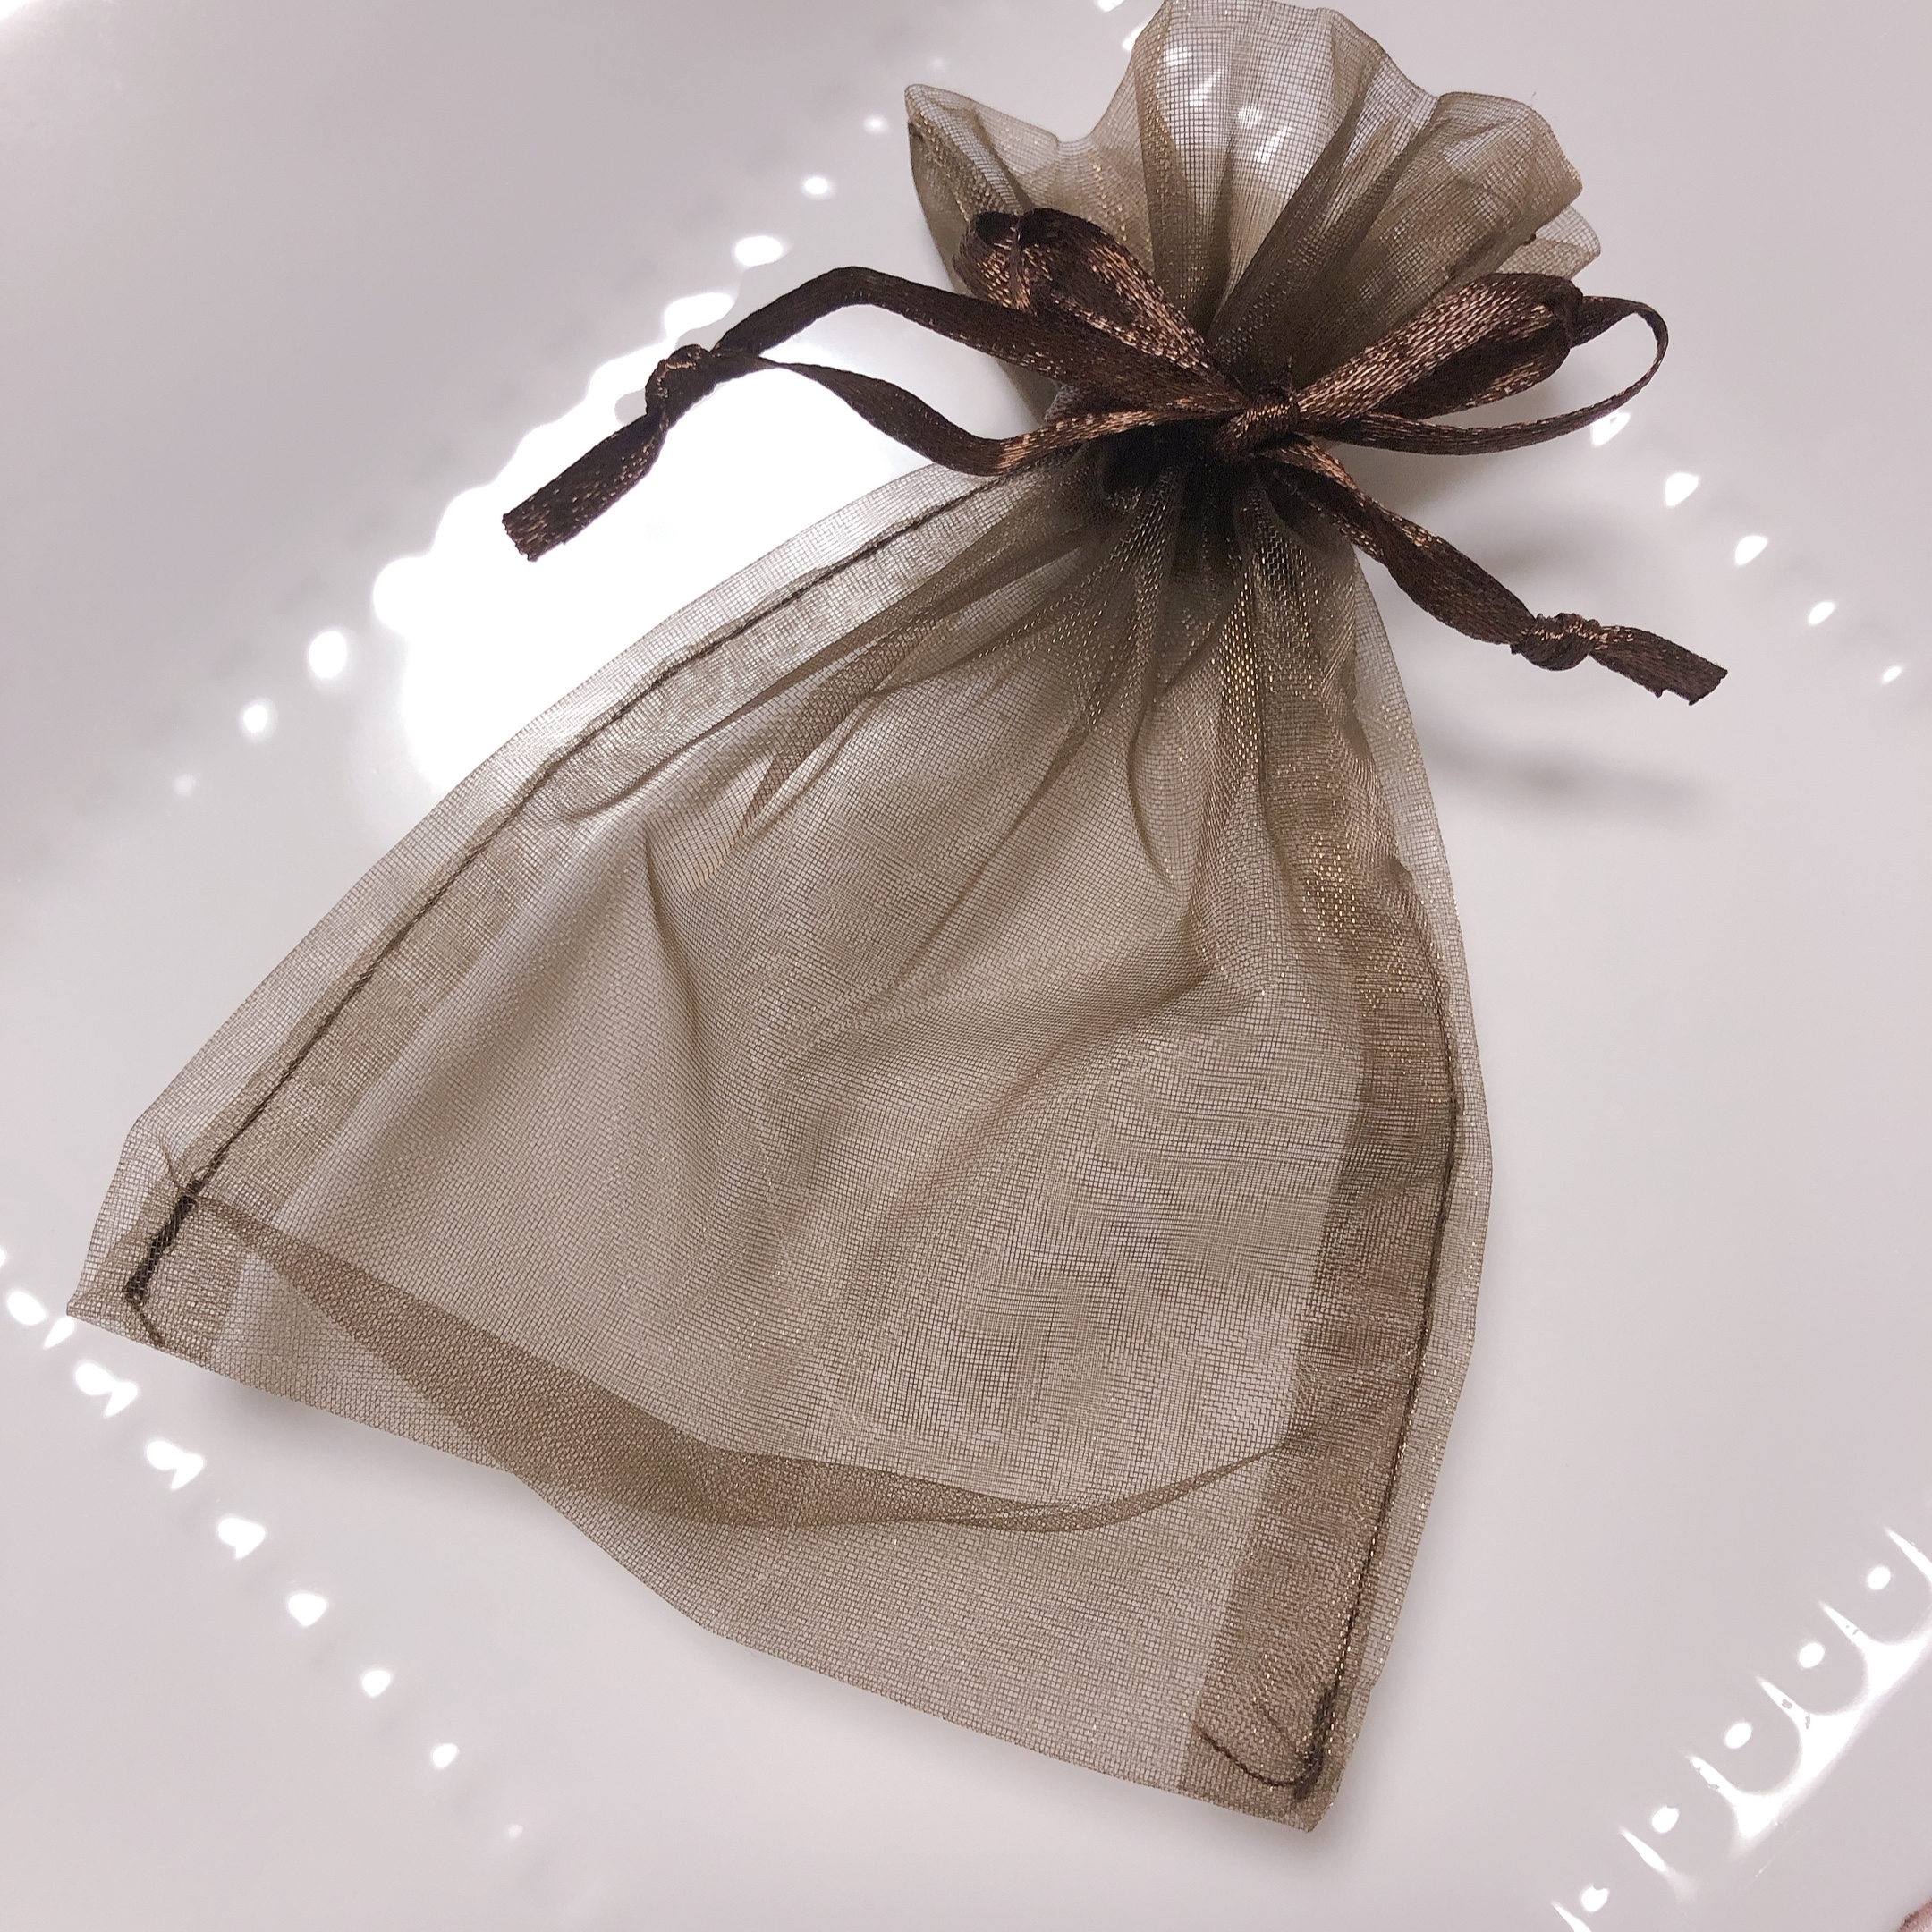 ラッピング用 オーガンジー巾着袋 Iichi ハンドメイド クラフト作品 手仕事品の通販